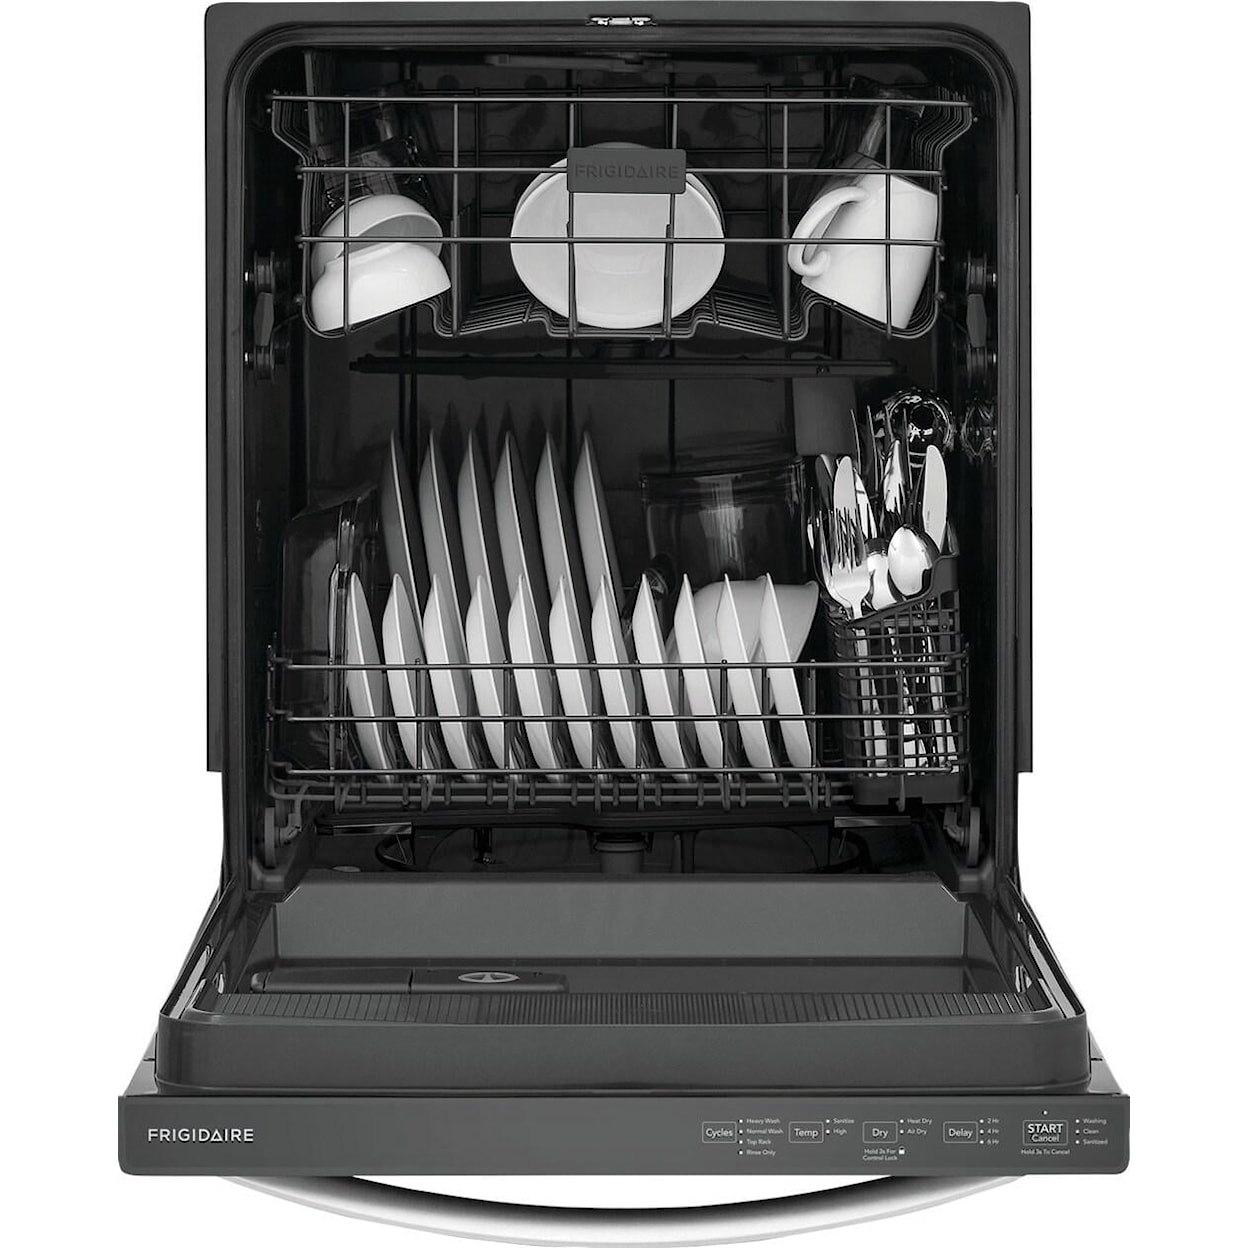 Frigidaire Dishwashers Built In Fullsize Dishwasher